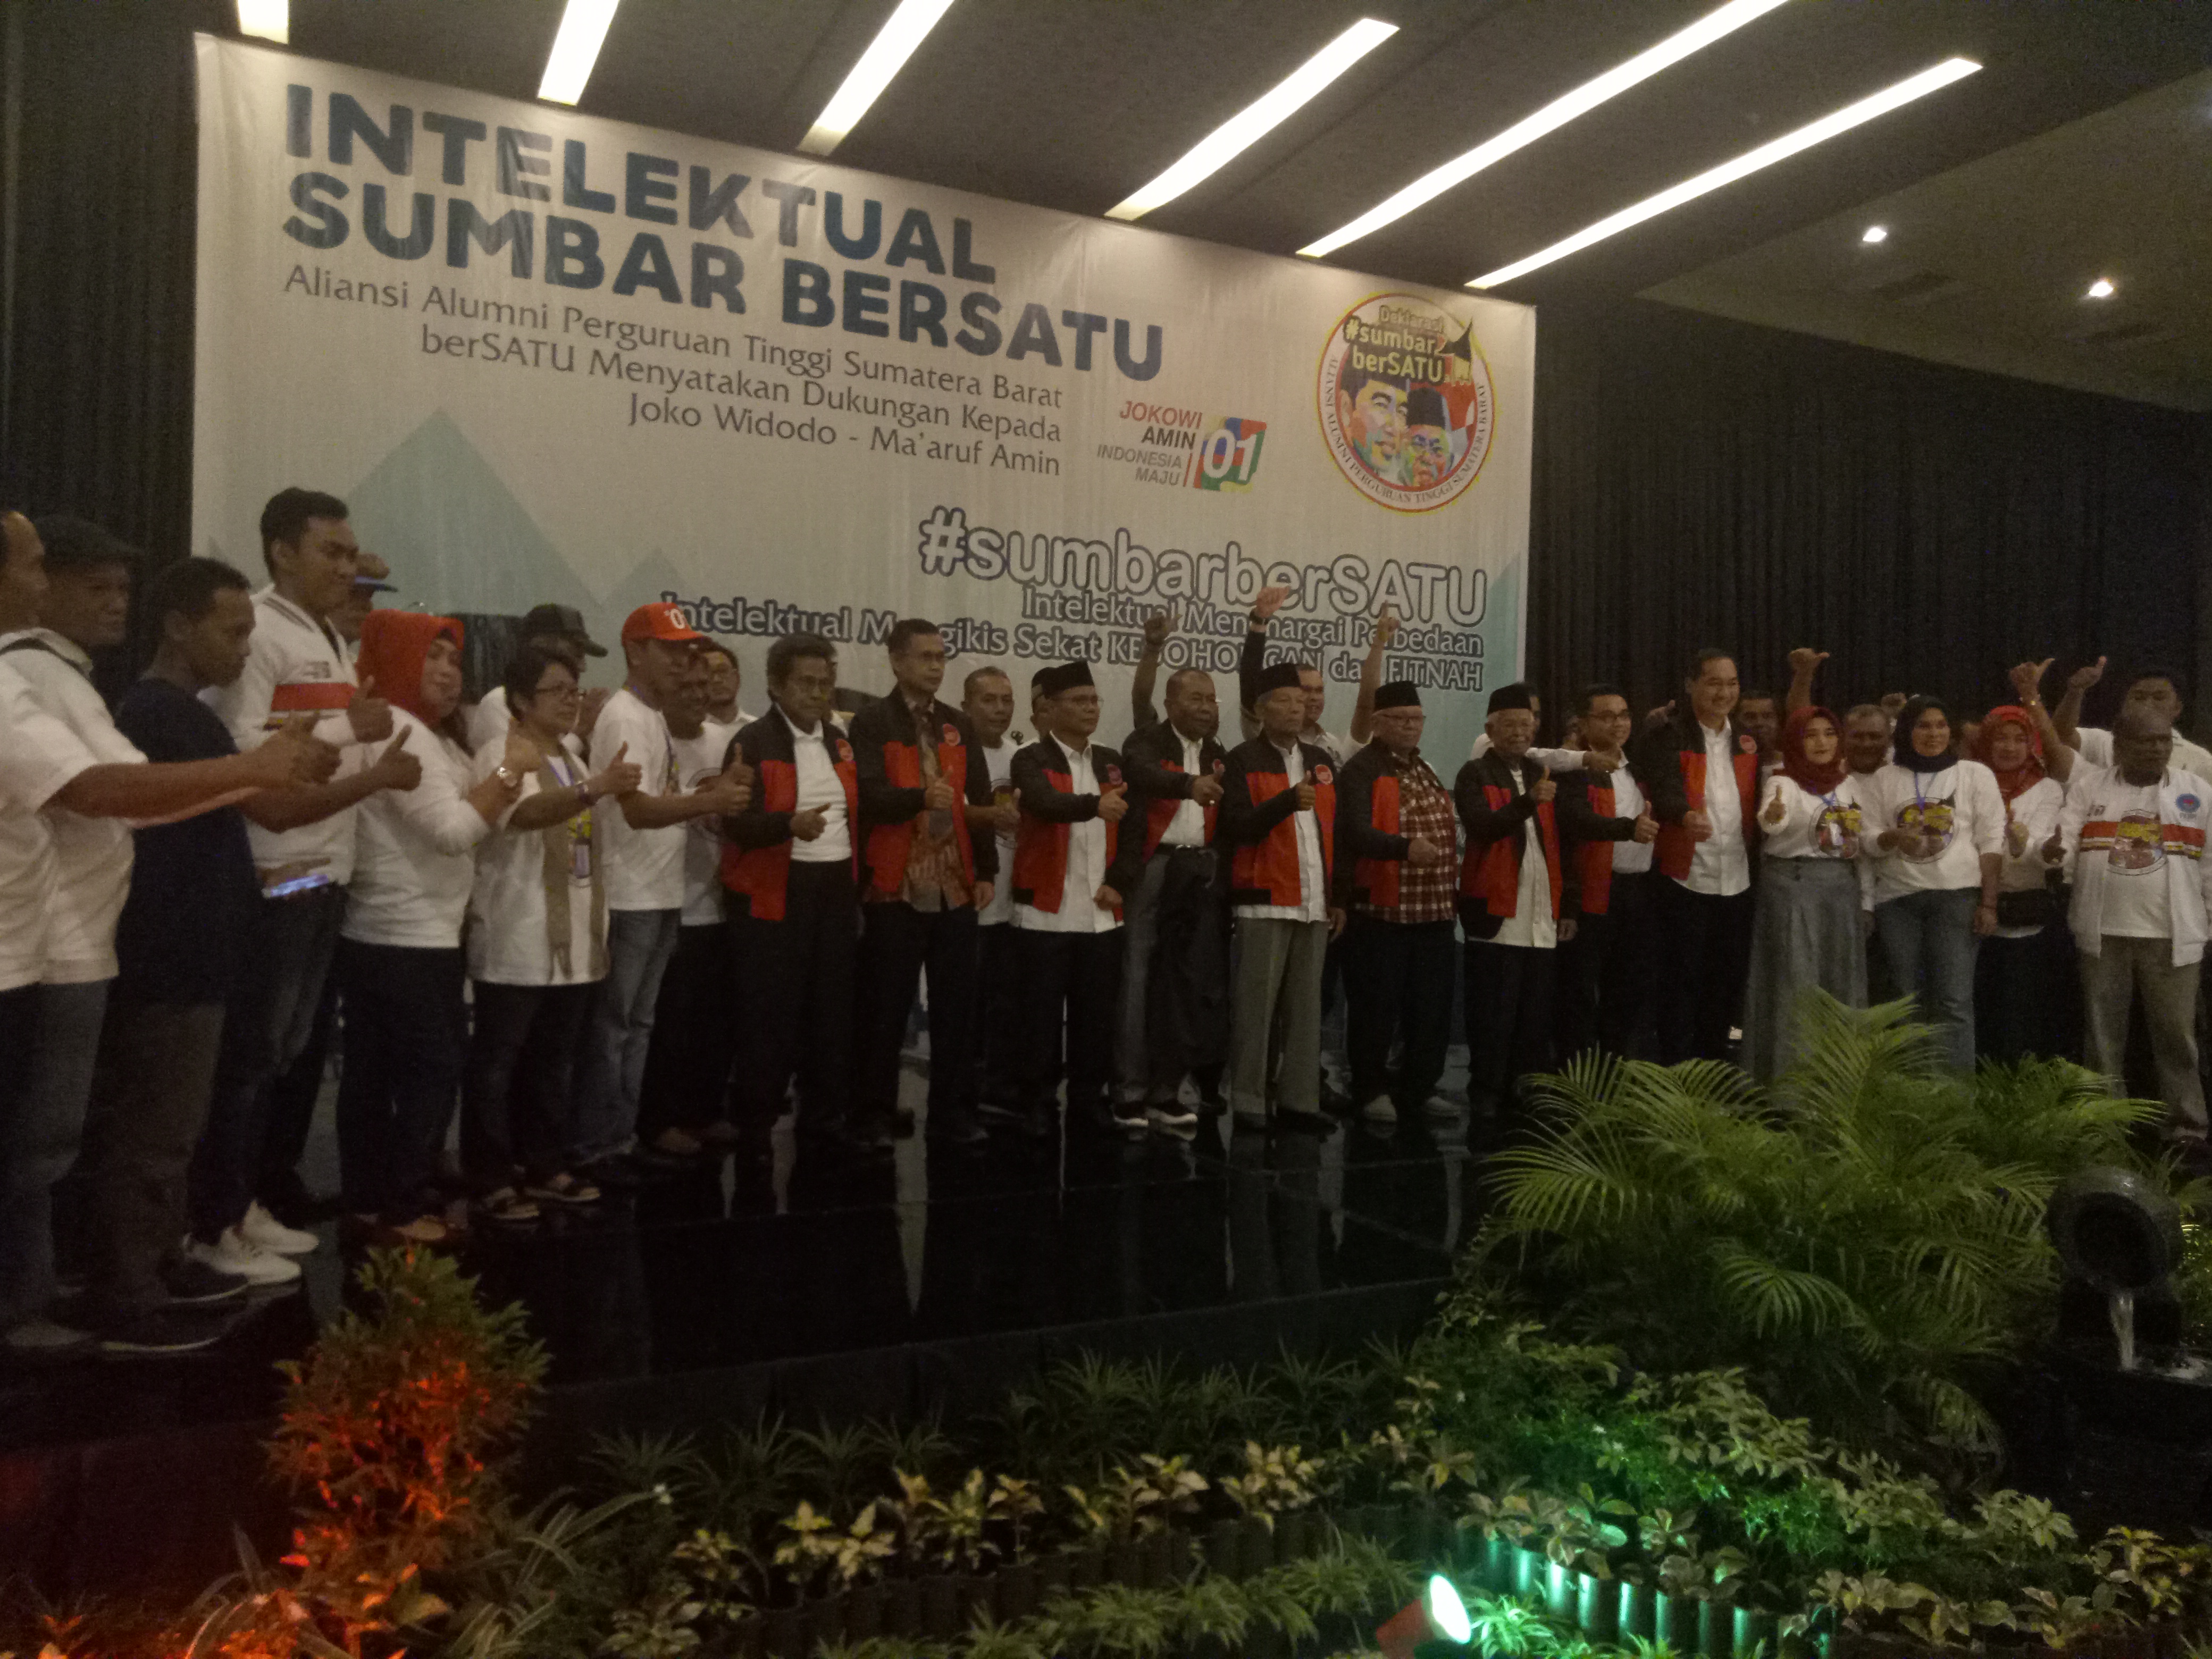 Deklarasi Aliansi Alumni Perguruan Tinggi Sumatera Barat  (Intelektual Sumbar berSATU), gelar deklarasi mendukung Joko Widodo